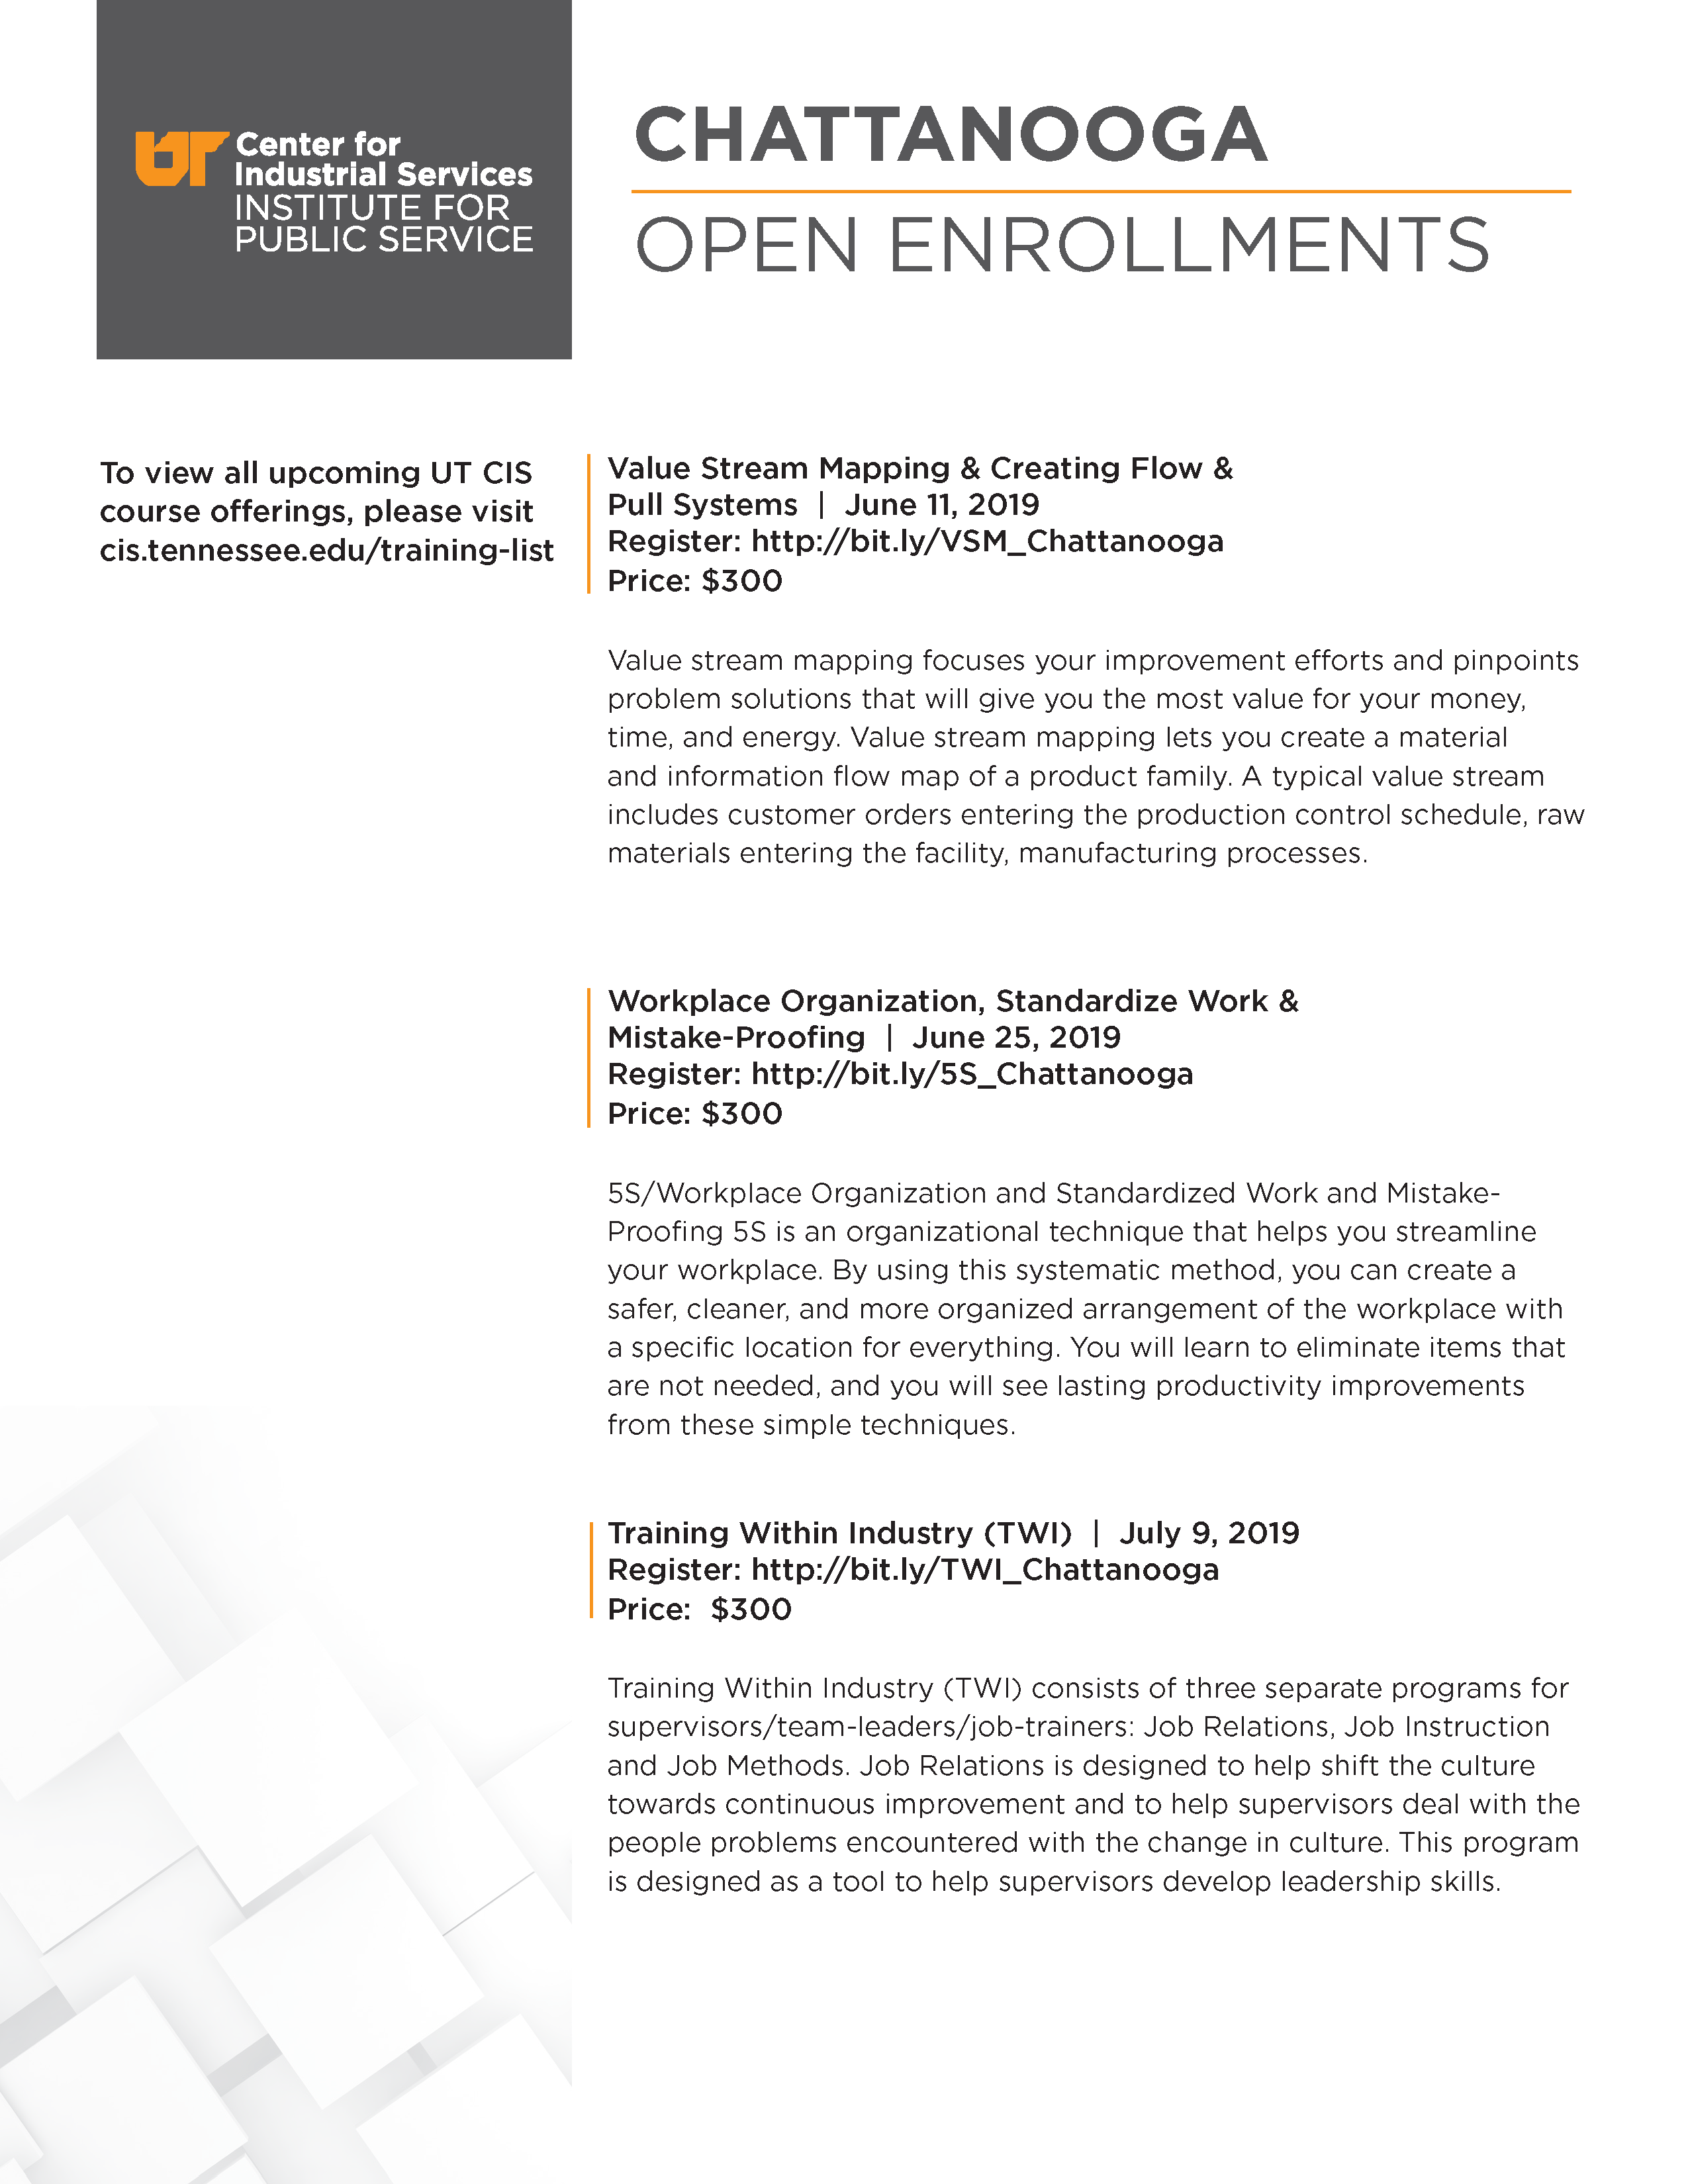 Open Enrollment Chattanooga UT CIS 